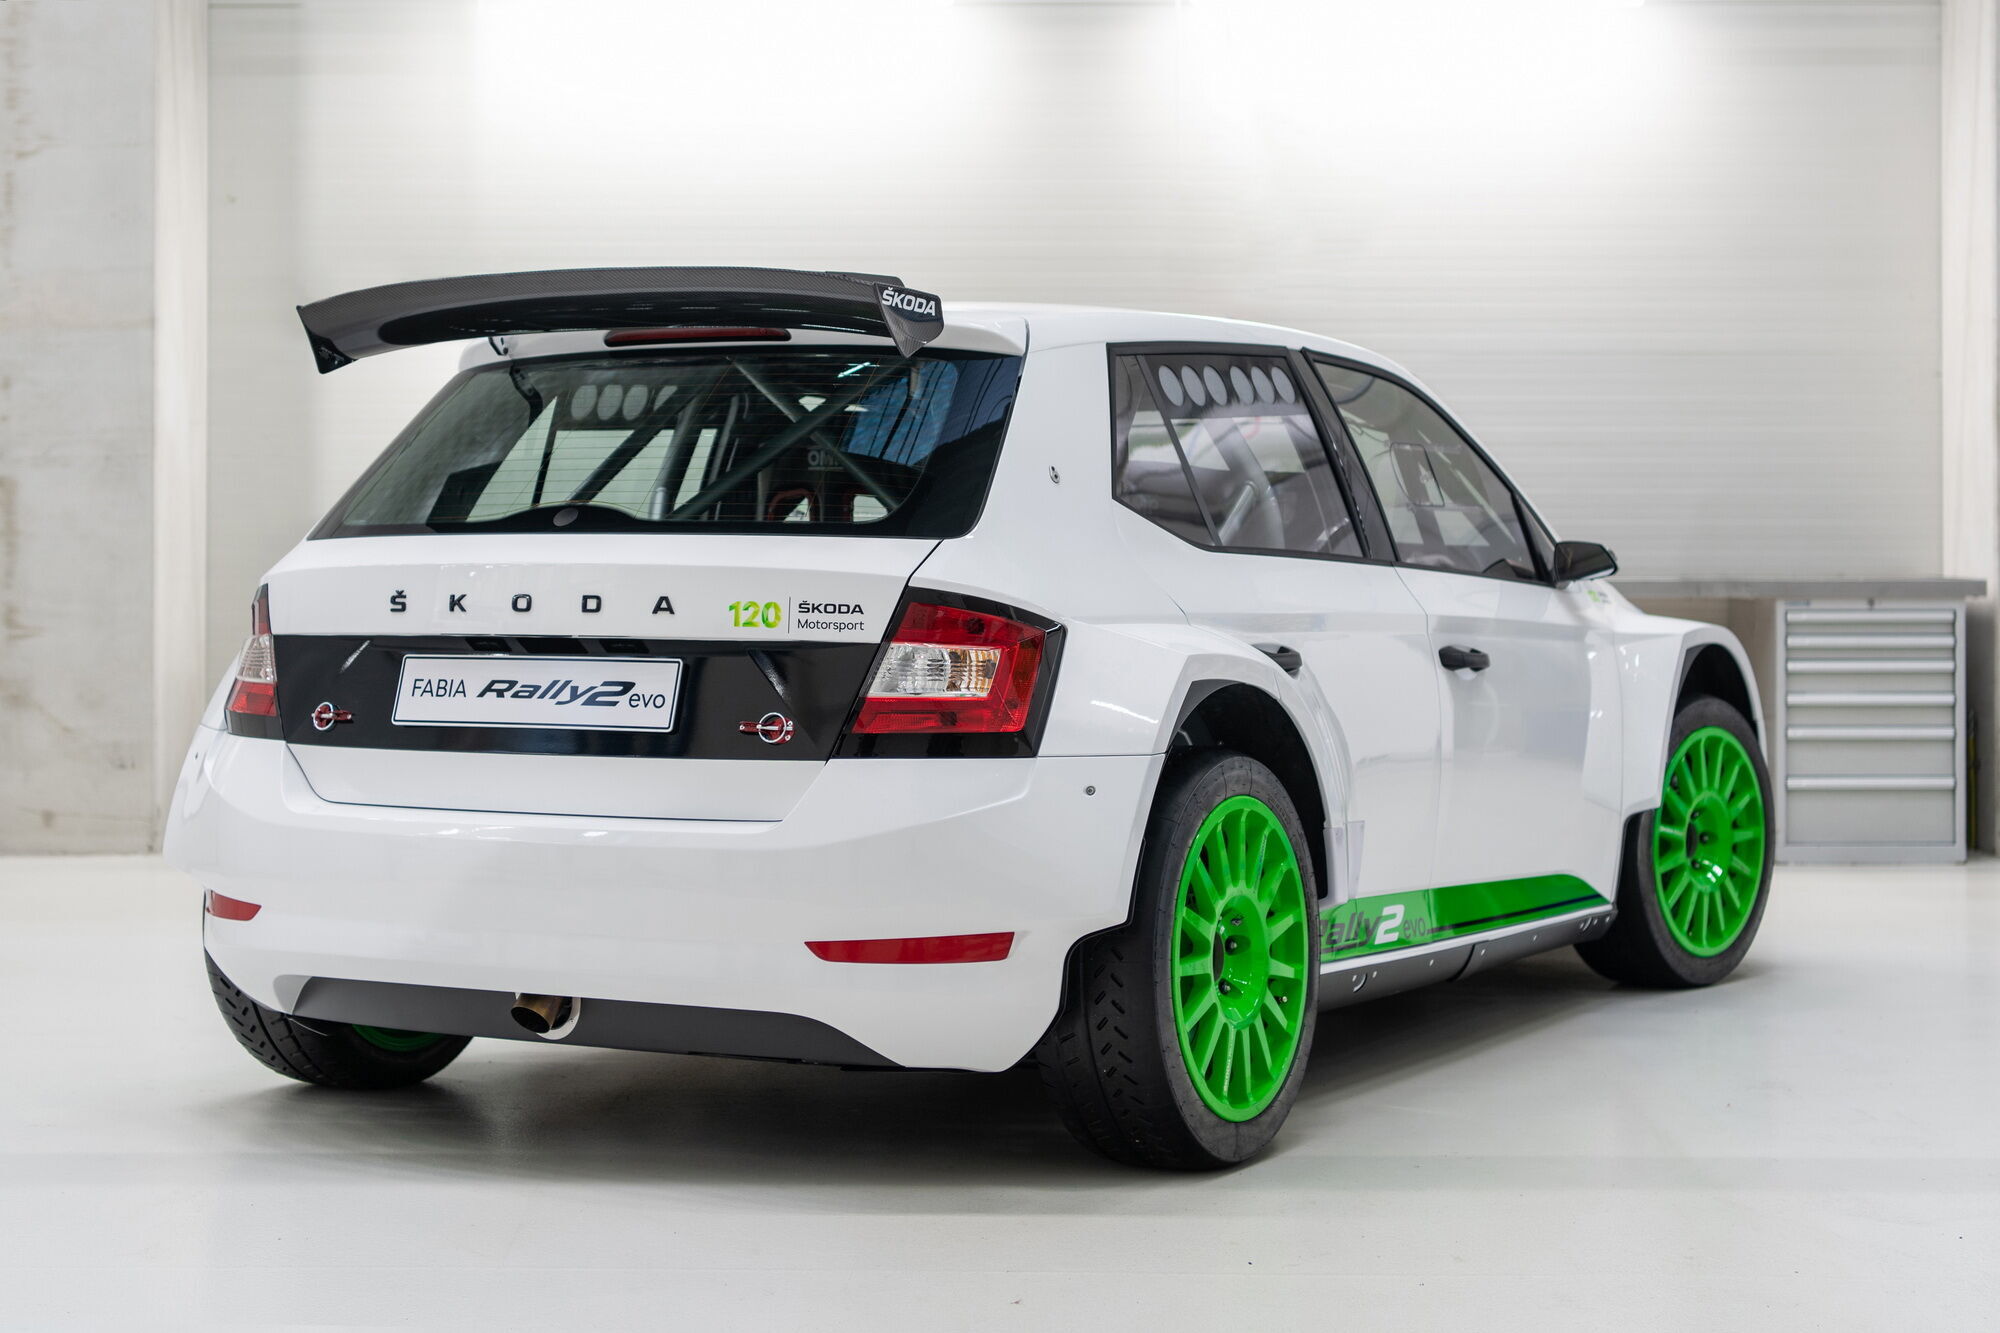 Підрозділ Skoda Motorsport виготовить всього 12 екземплярів моделі Fabia Rally2 Evo Edition 120 Rally Car